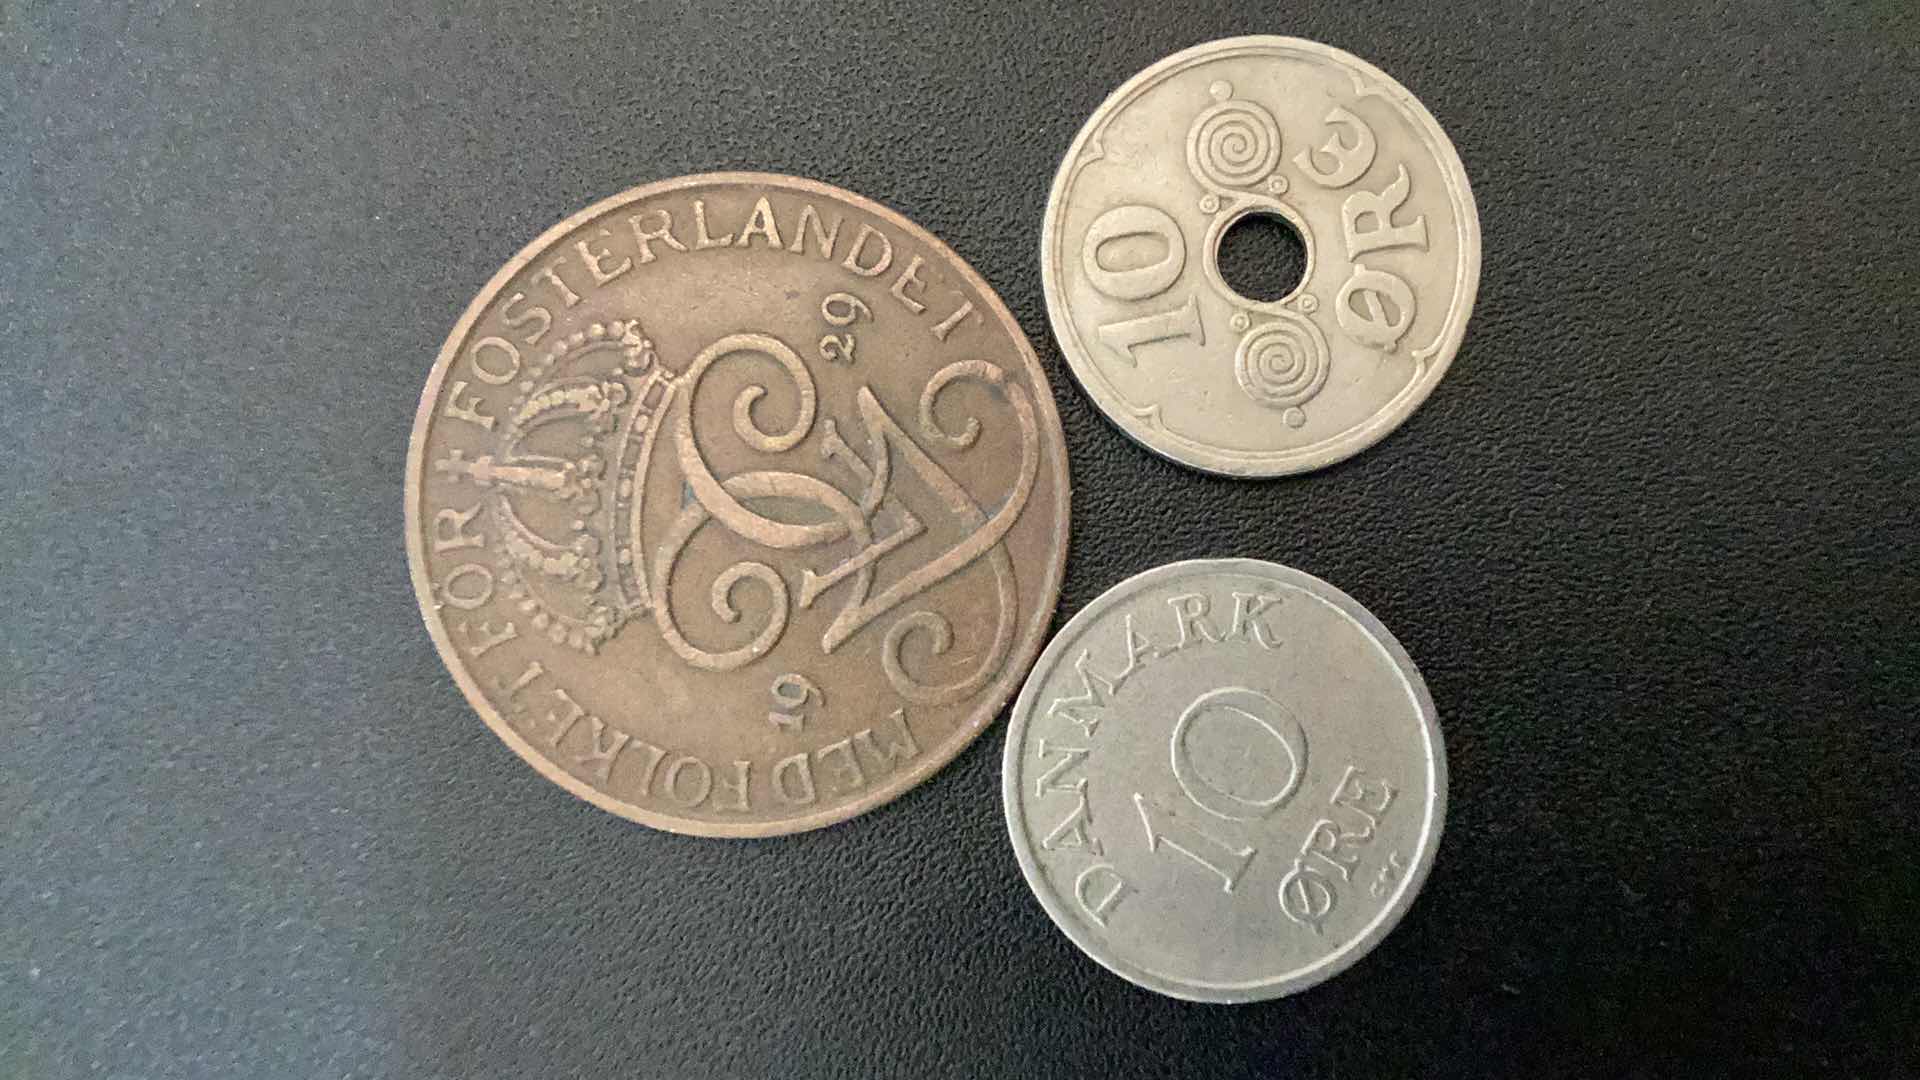 Photo 2 of 3 COLLECTIBLE COINS - 2 DENMARK  (5 ORE AND 10 ORE 1929), 1 DENMARK  10 ORE 1957